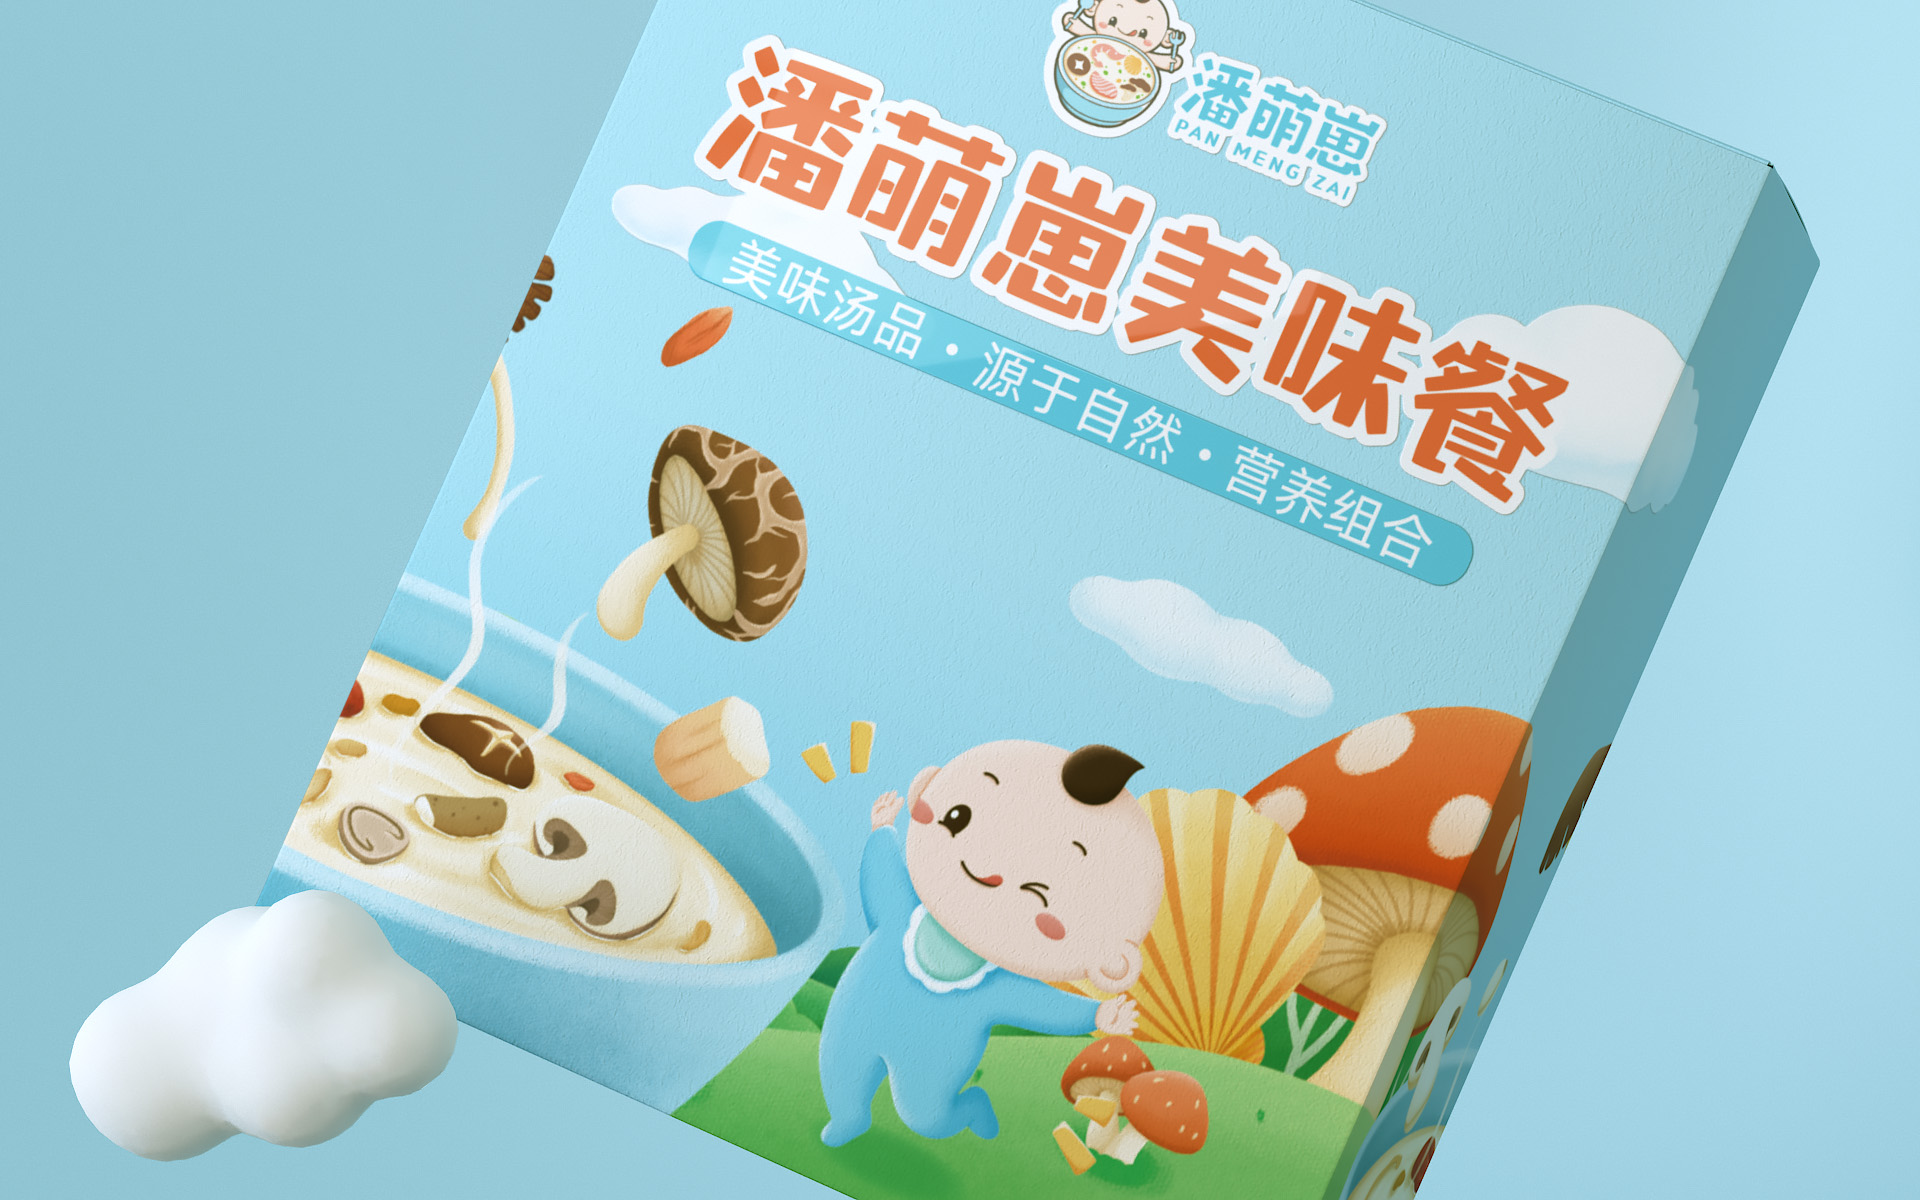 潘萌崽营养餐-儿童辅食产品的品牌及包装设计 产品包装设计 第16张